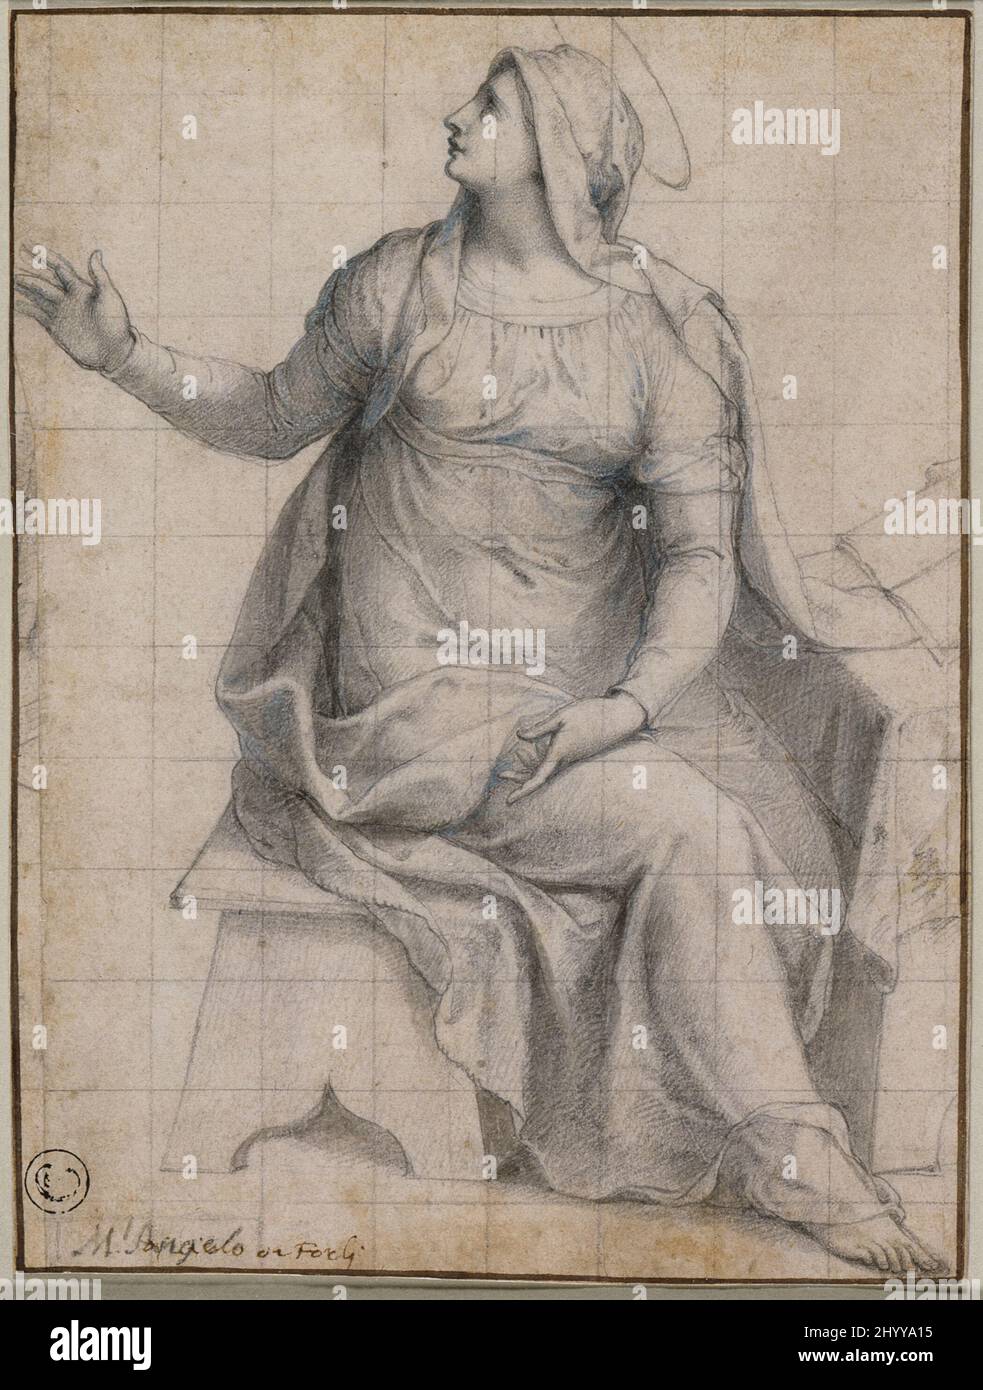 La Vierge de l'Annonciation. Livio Agresti (Italie, Forli, vers 1508-1580). Italie, vers 1559. Mises en plan. Craie noire avec touches de lavage bleu, carrée pour le transfert Banque D'Images